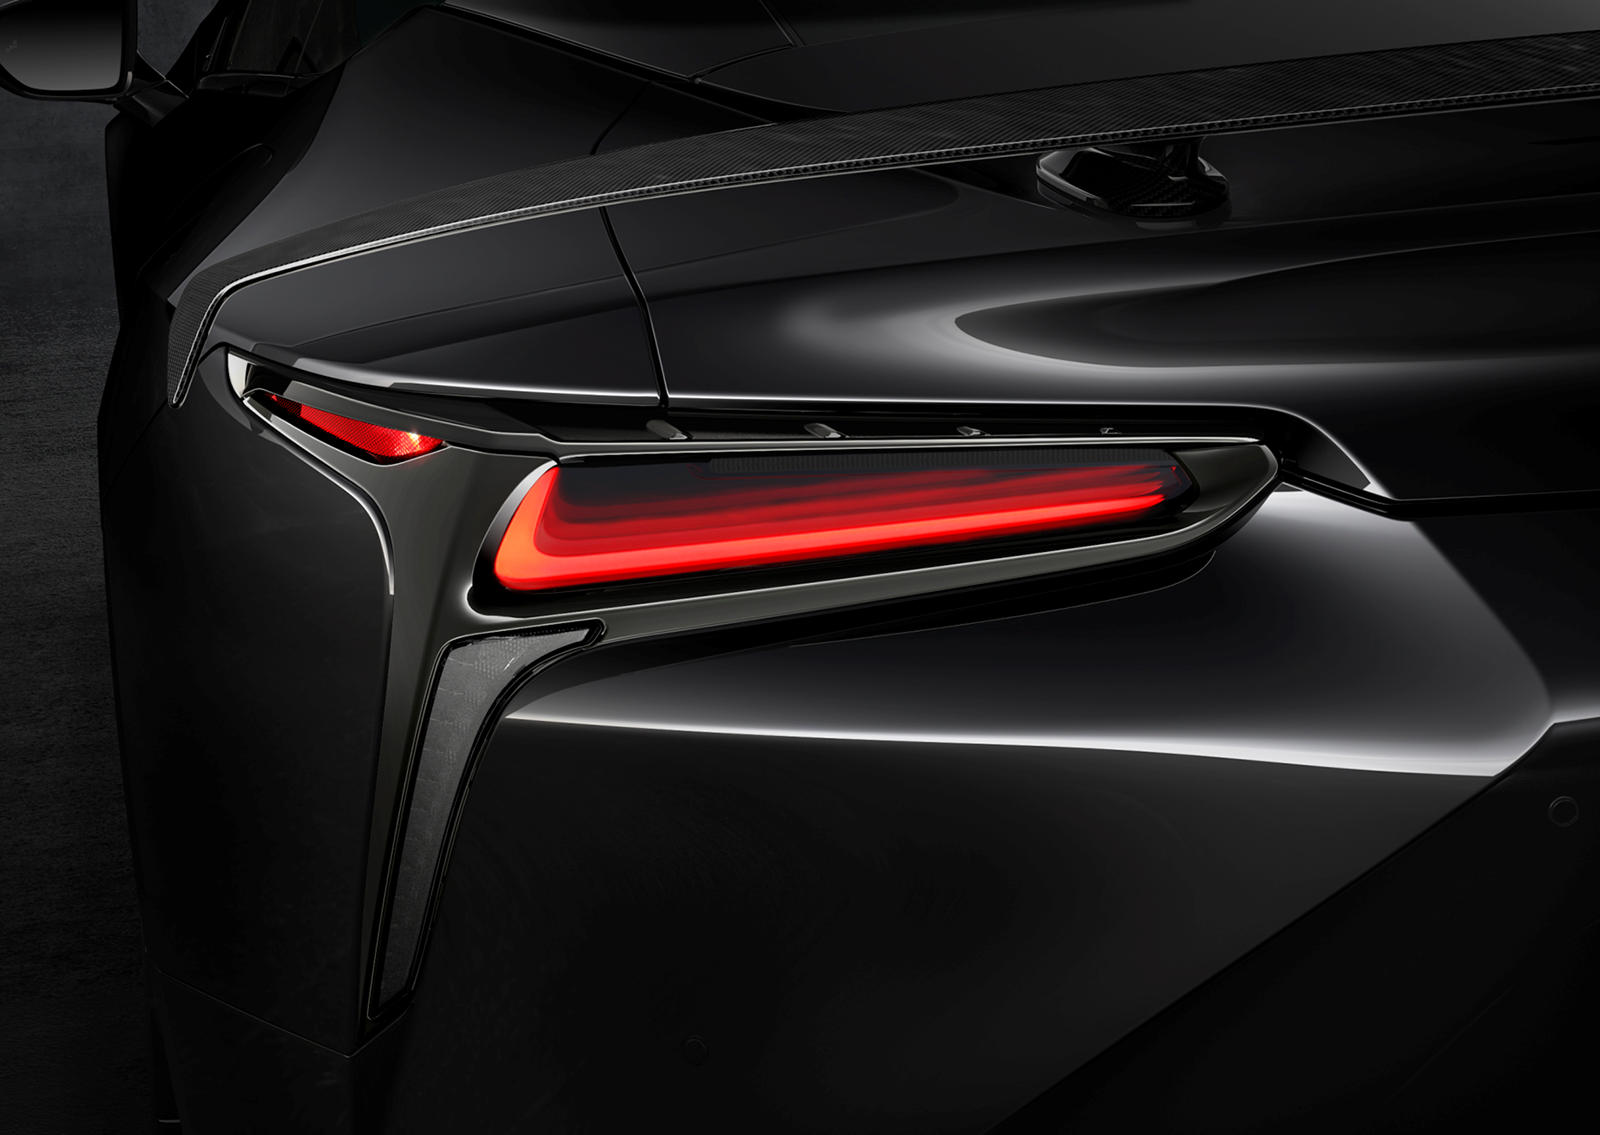 2021 Lexus LC 500 Coupe - потрясающий автомобиль в любой конфигурации, но каждый год Lexus выпускает специальную серию Inspiration Series, которая еще больше подчеркивает его красоту. В 2019 году первая серия Inspiration была выполнена в цвете Flare 